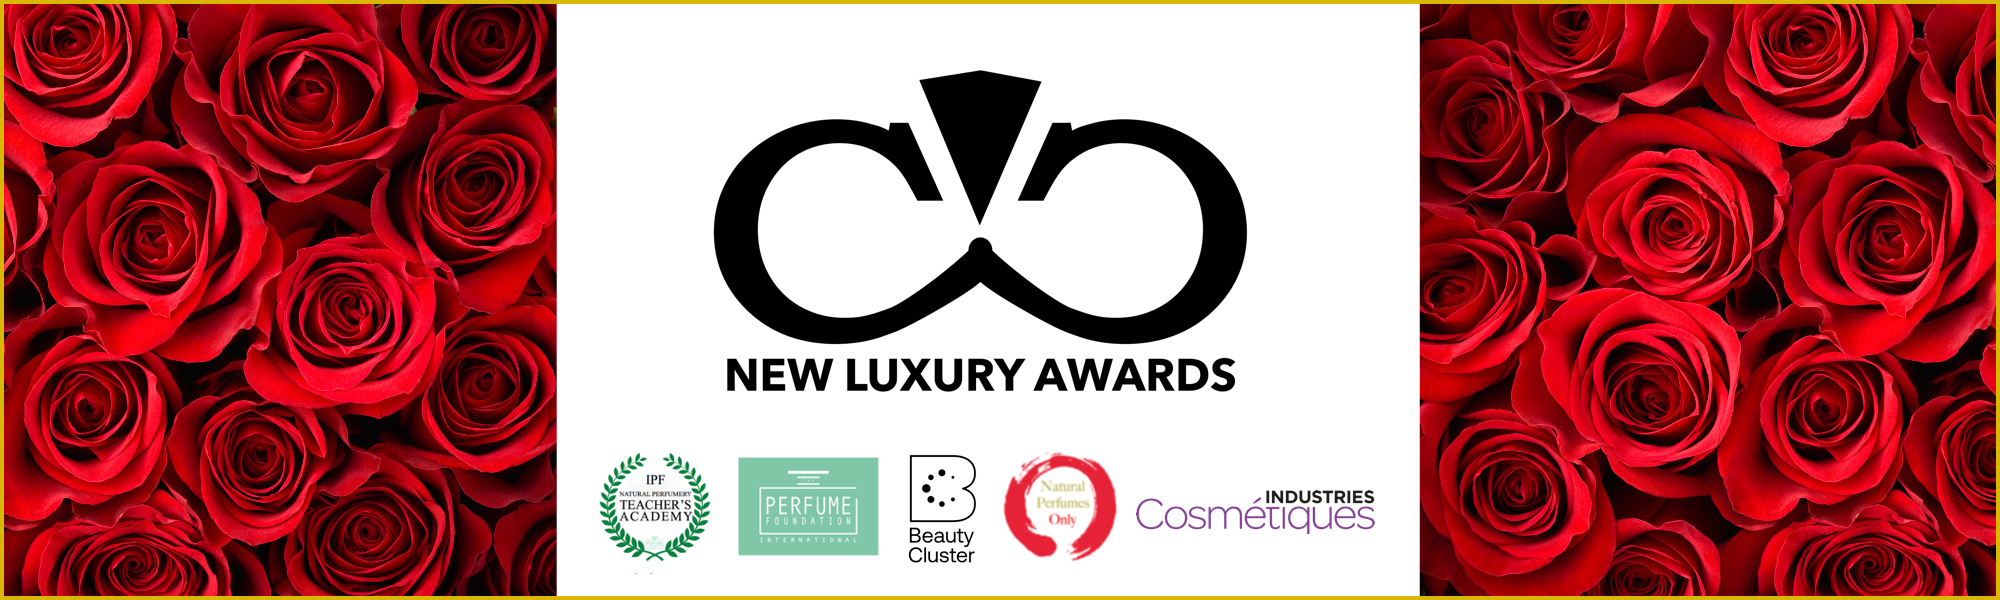 New Luxury Awards logo